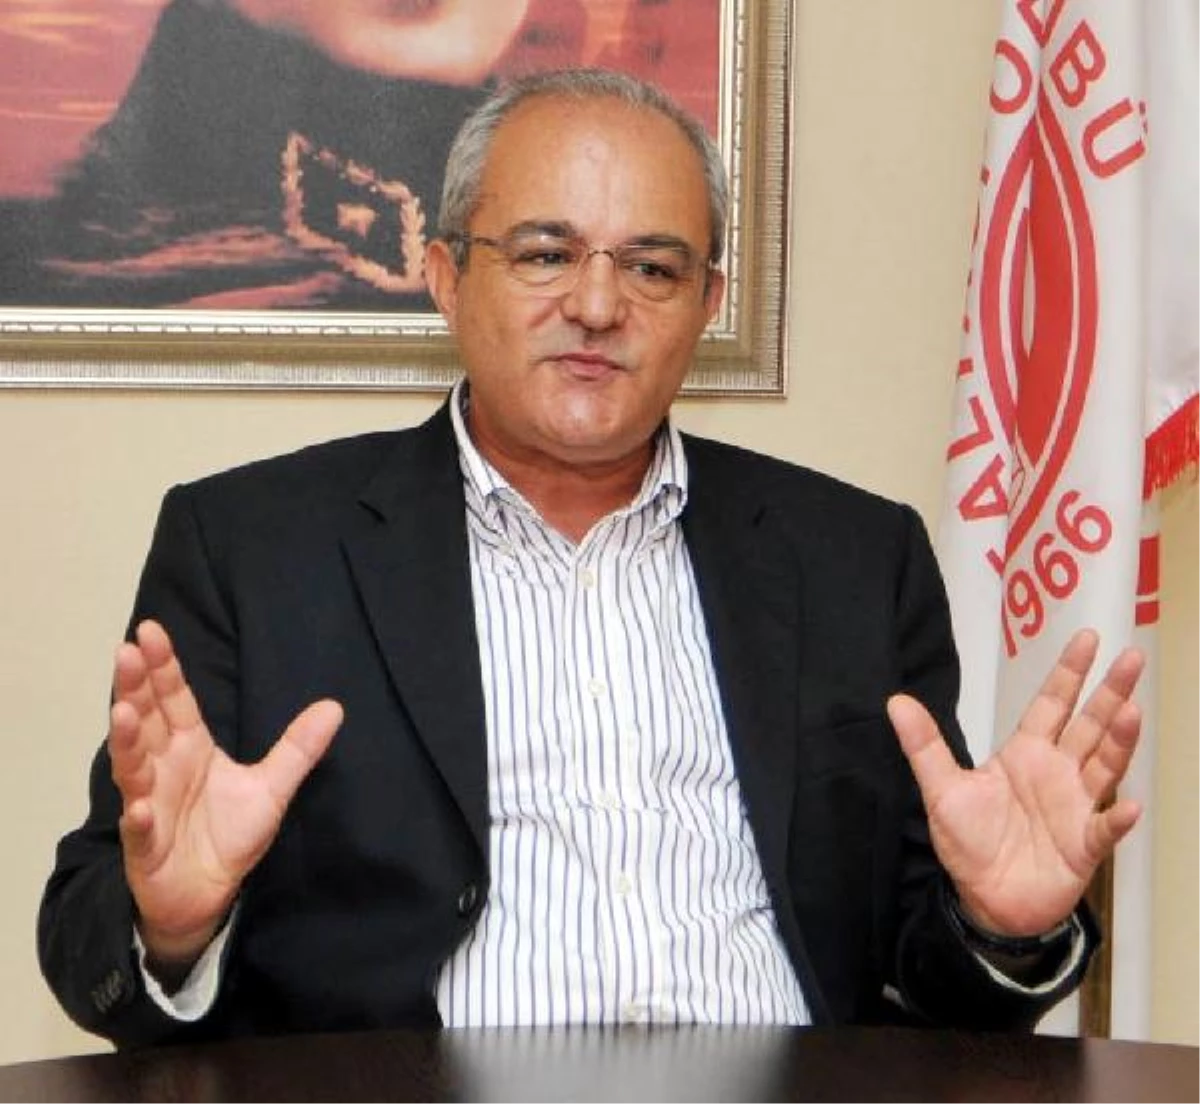 Antalyaspor Başkanı: "Şike Yapan Küme Düşürülsün"